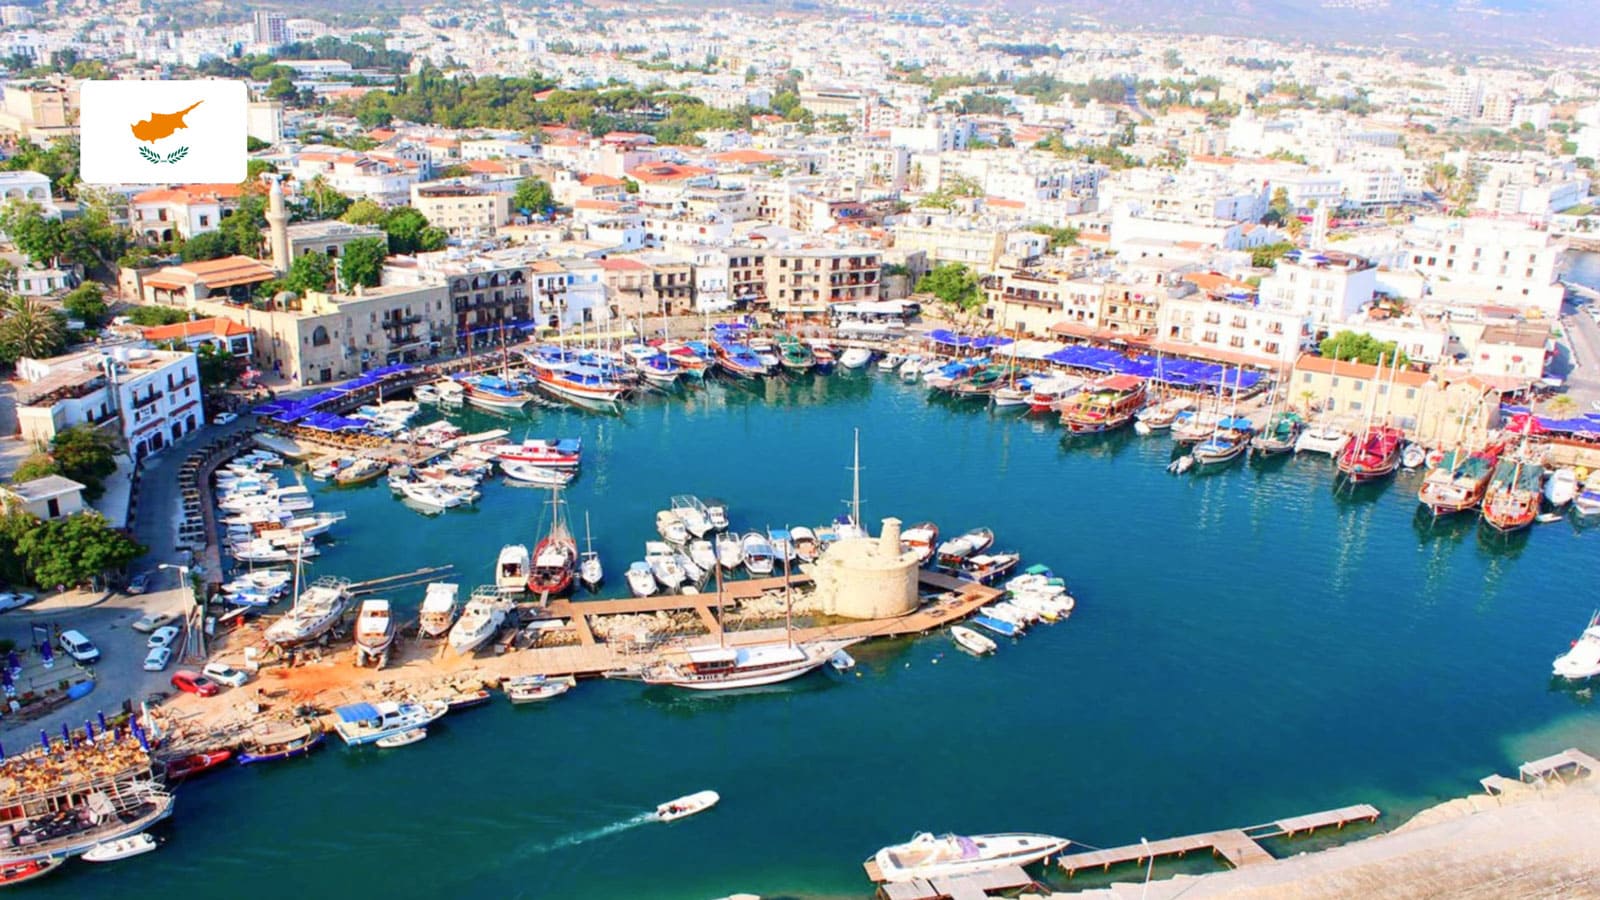 Получить вид на жительство для ведения предпринимательской деятельности на Кипре можно по одной из трех категорий